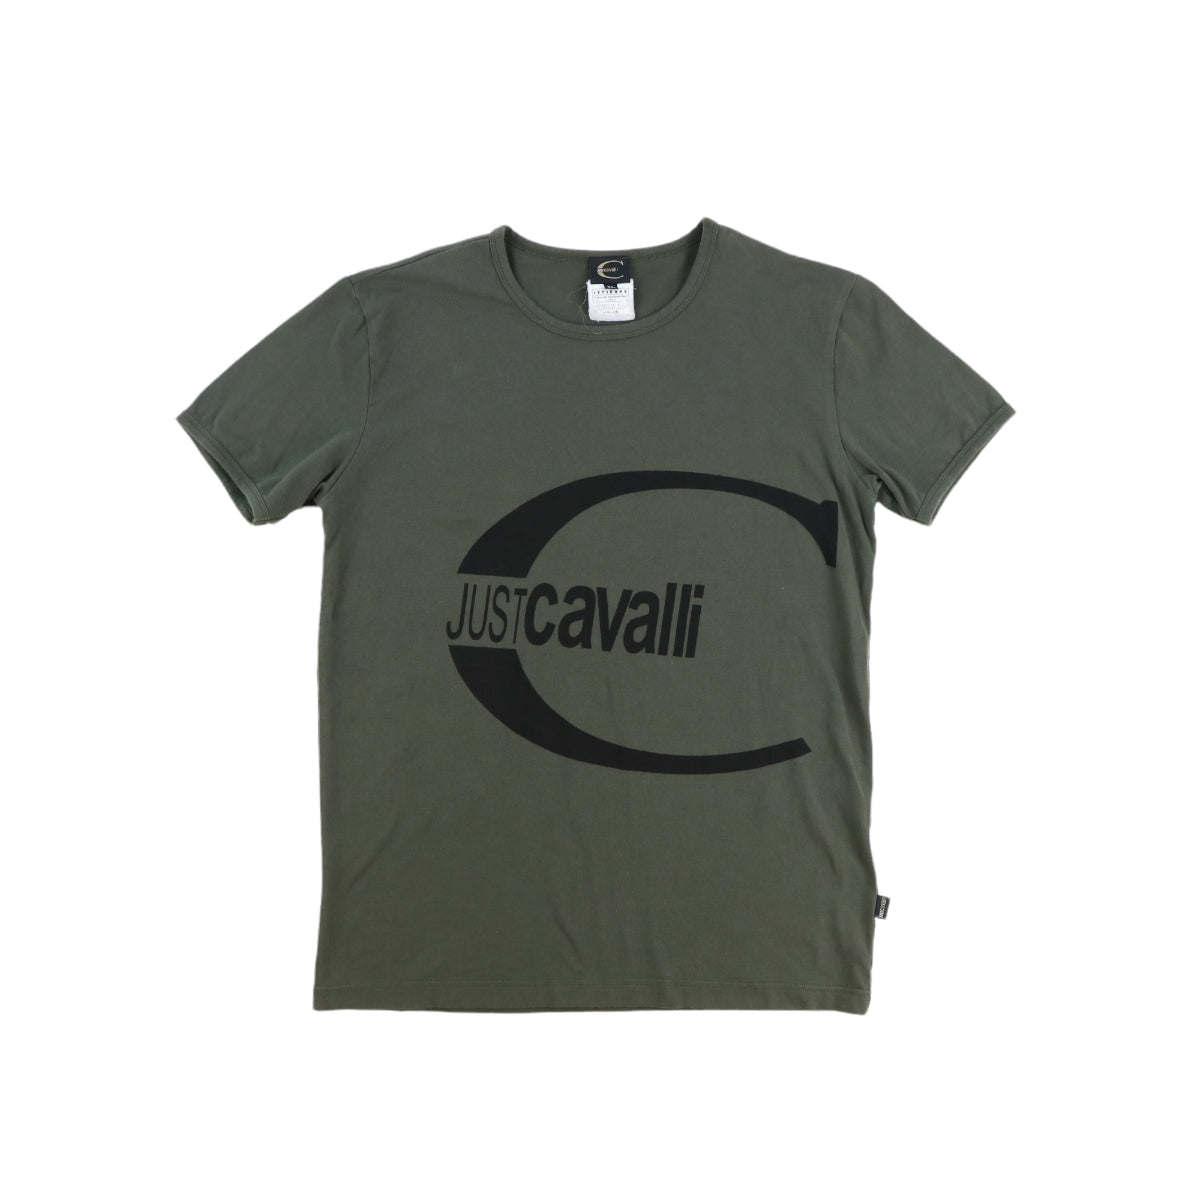 Just Cavalli Tshirt (M)